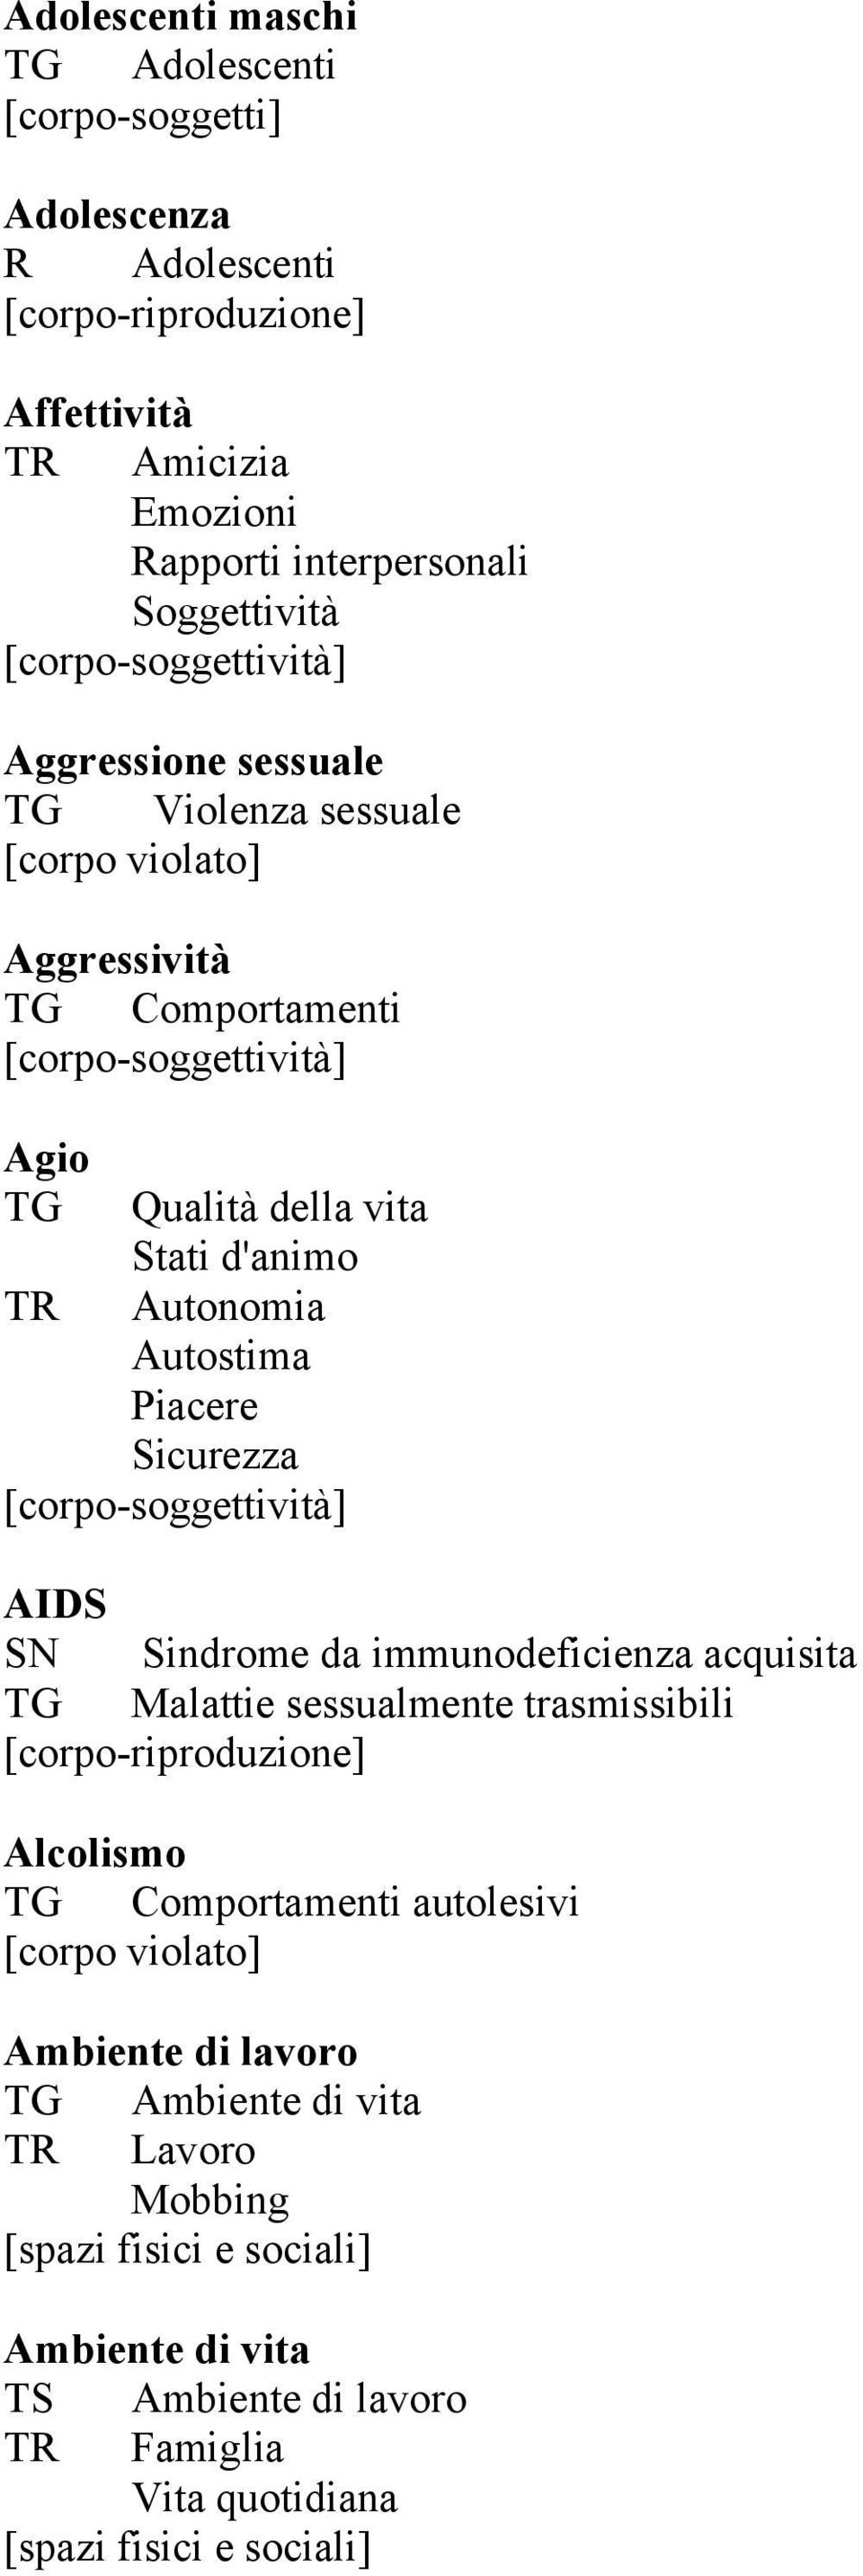 AIDS SN Sindrome da immunodeficienza acquisita TG Malattie sessualmente trasmissibili Alcolismo TG Comportamenti autolesivi Ambiente di lavoro TG